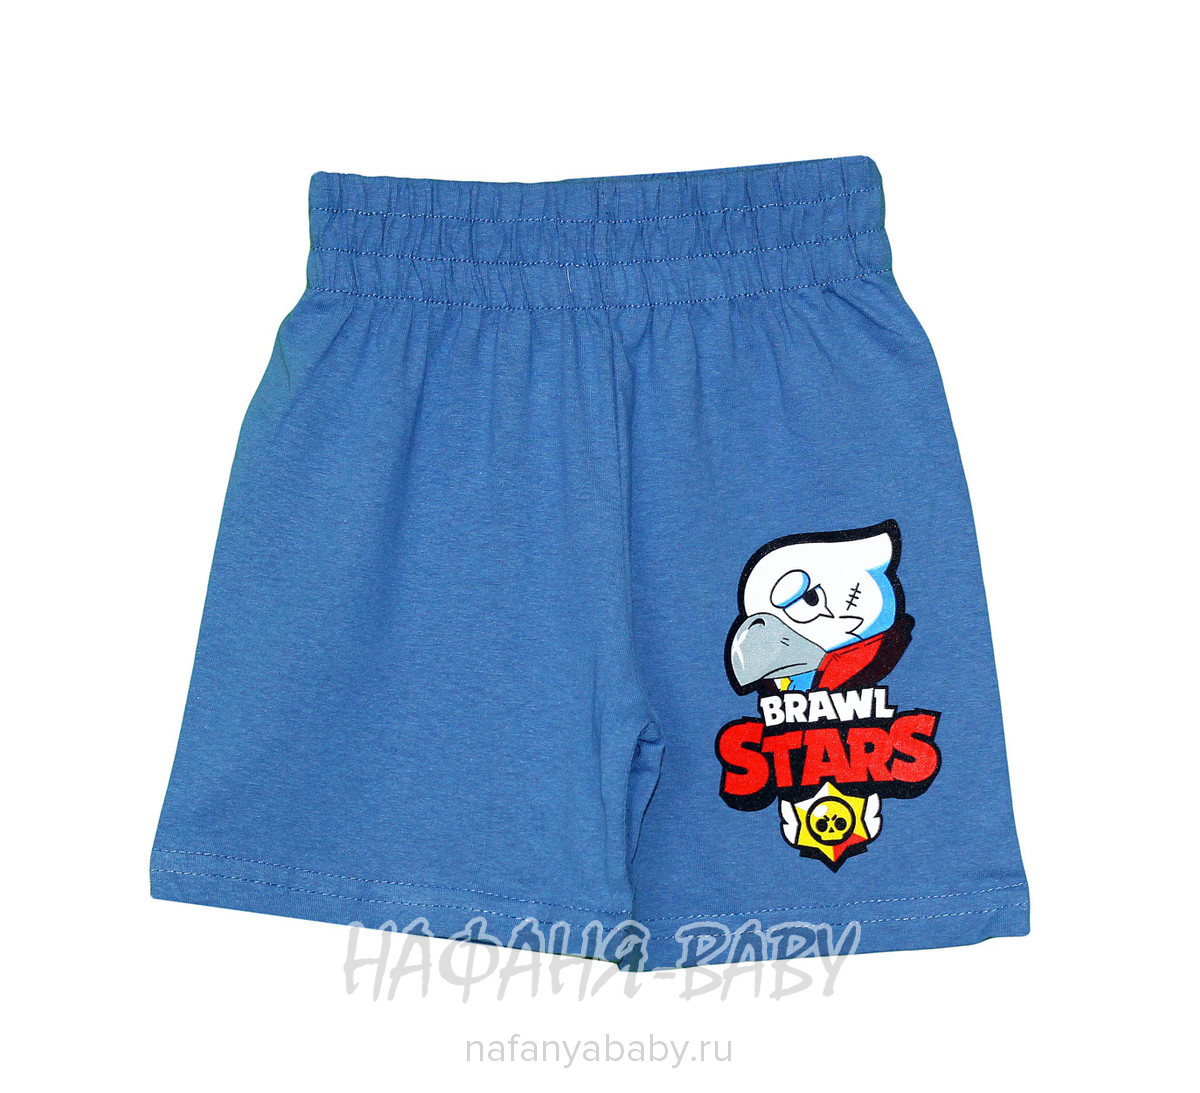 Детские шорты UNRULY, купить в интернет магазине Нафаня. арт: 3248.